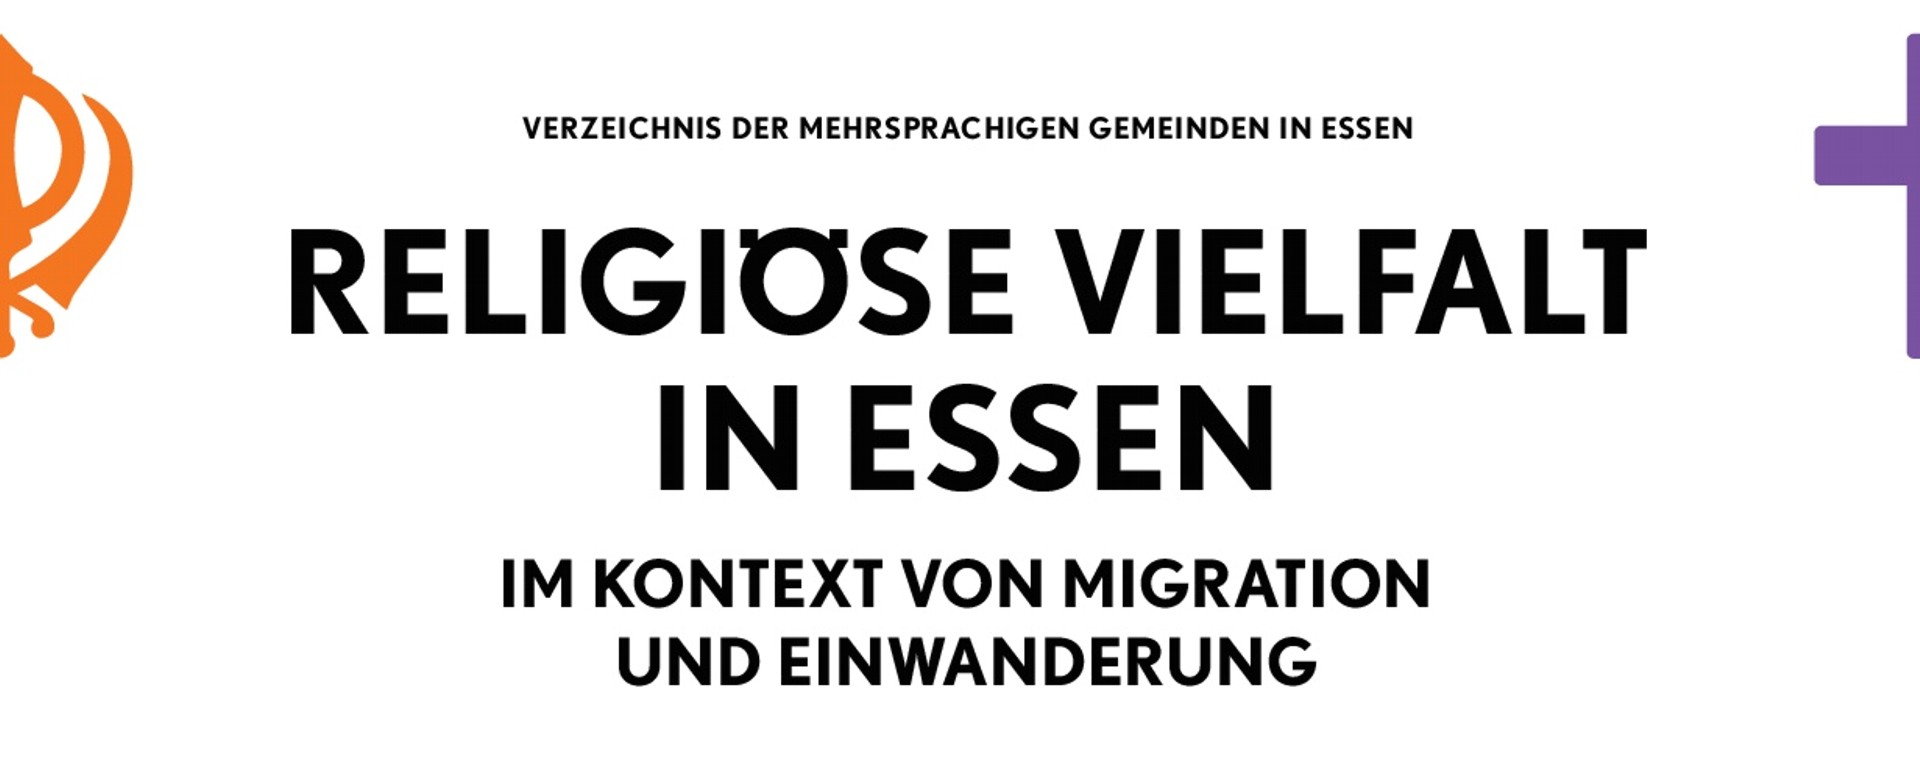 Broschüre „Religiöse Vielfalt im Kontext von Migration und Einwanderung“ erschienen